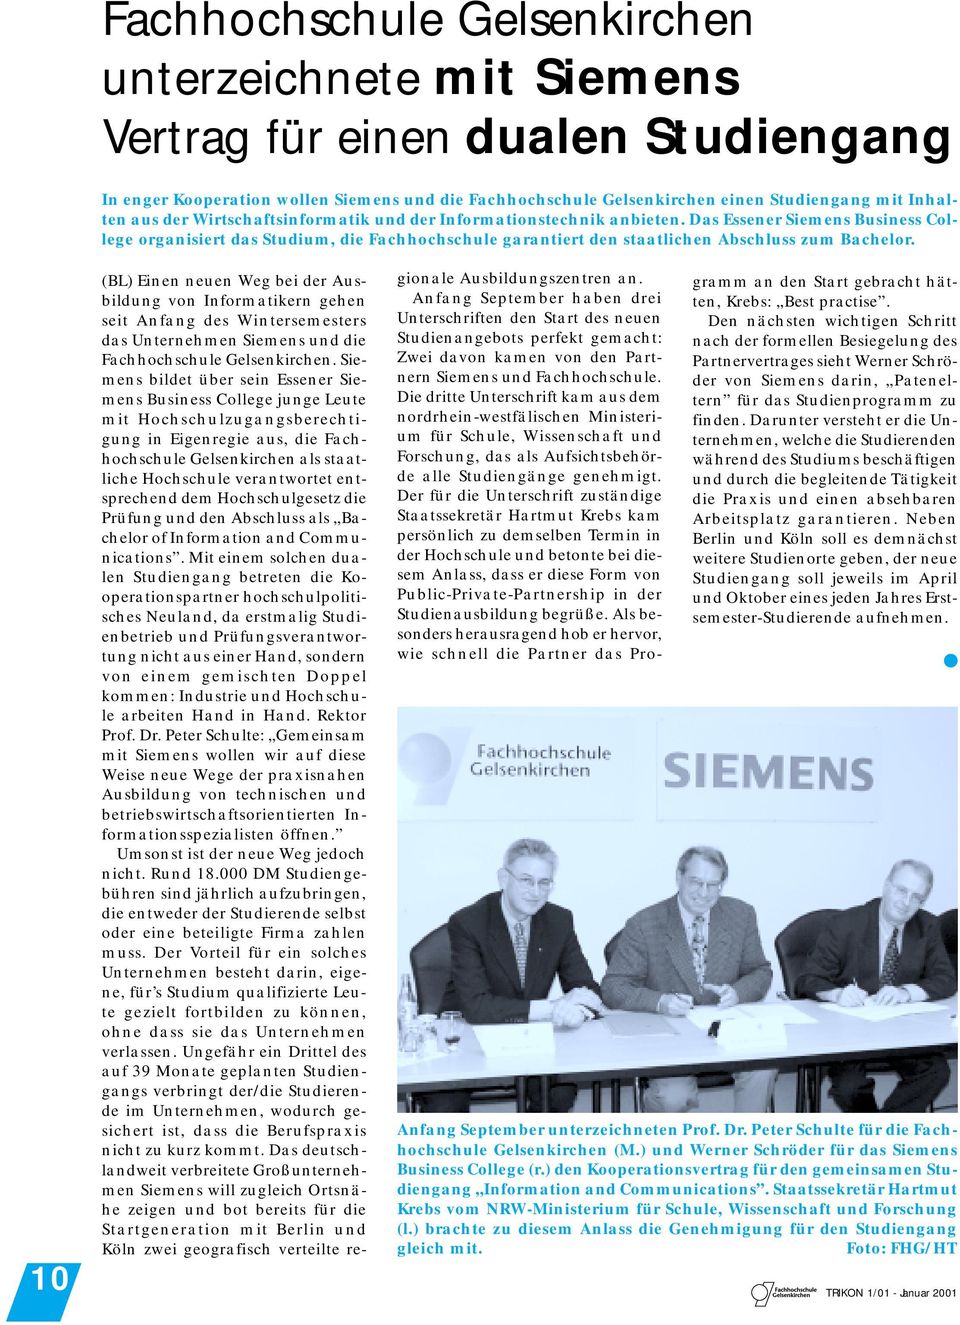 (BL) Einen neuen Weg bei der Ausbildung von Informatikern gehen seit Anfang des Wintersemesters das Unternehmen Siemens und die Fachhochschule Gelsenkirchen.